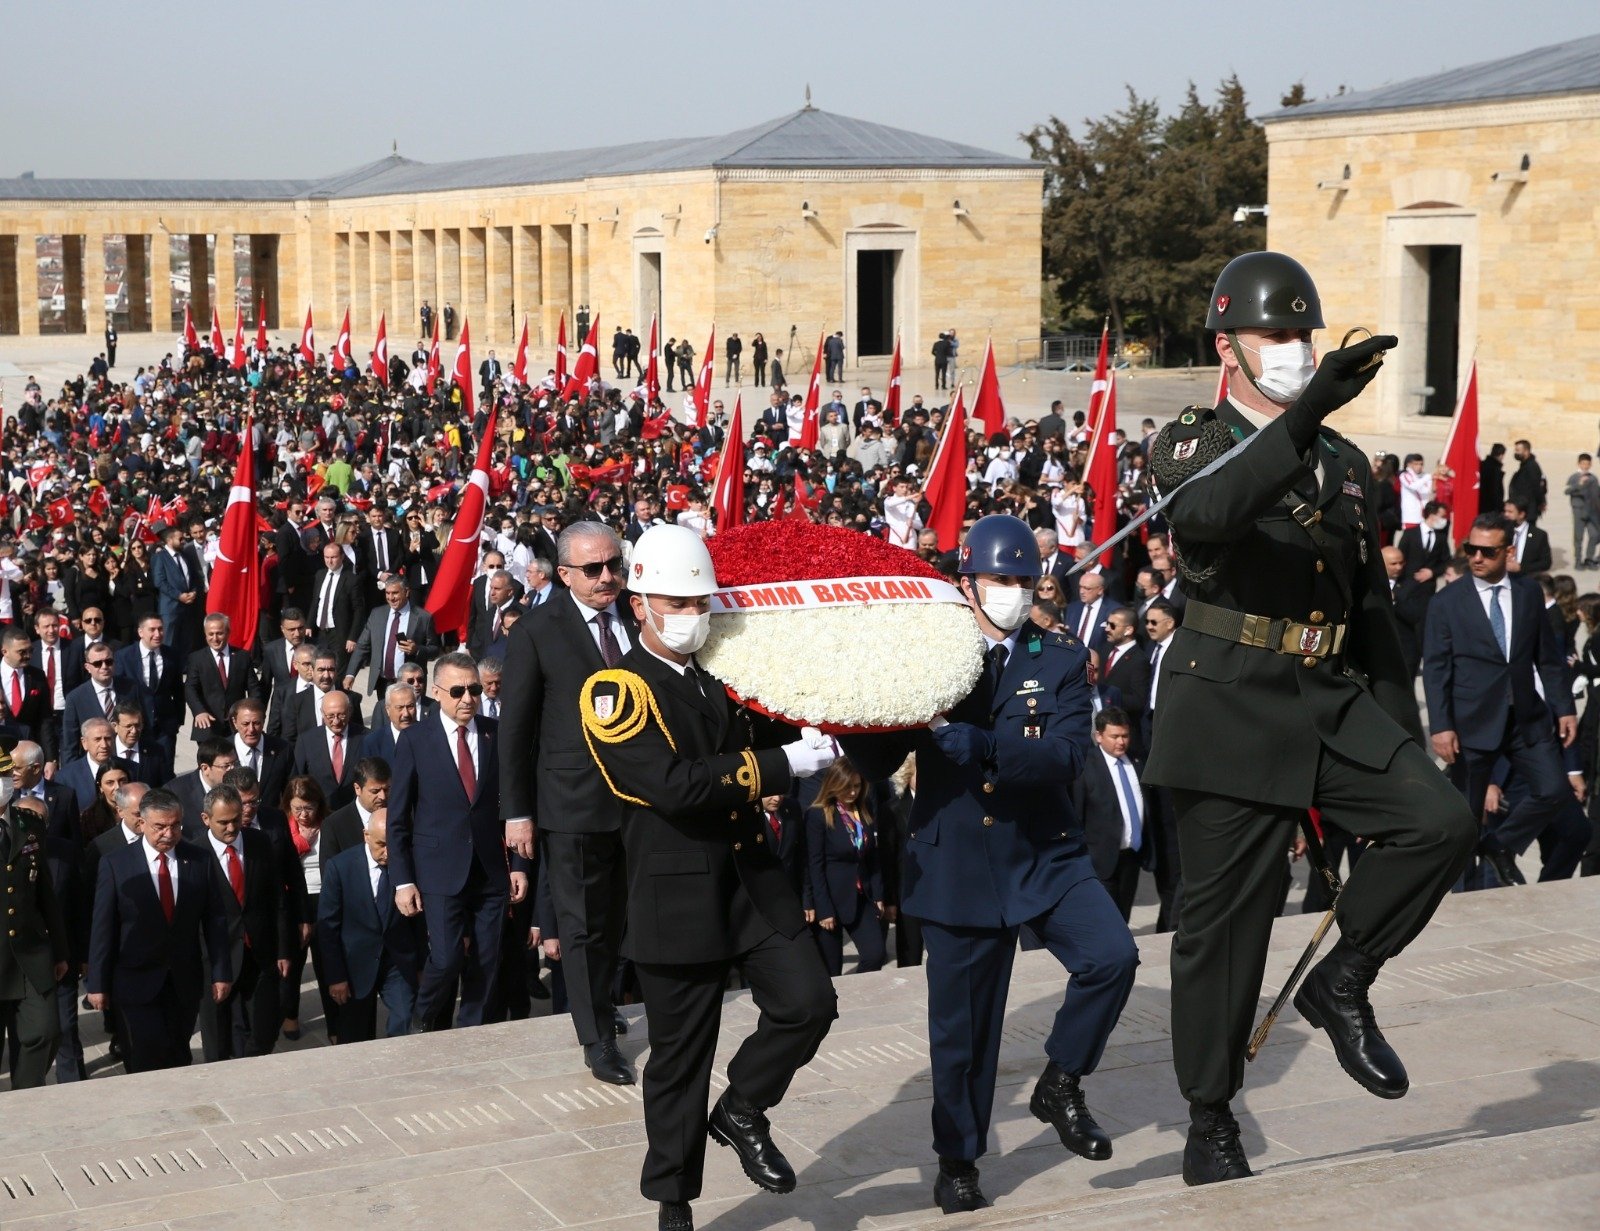 Atatürk's Mausoleum in Ankara sees high footfall on April 23